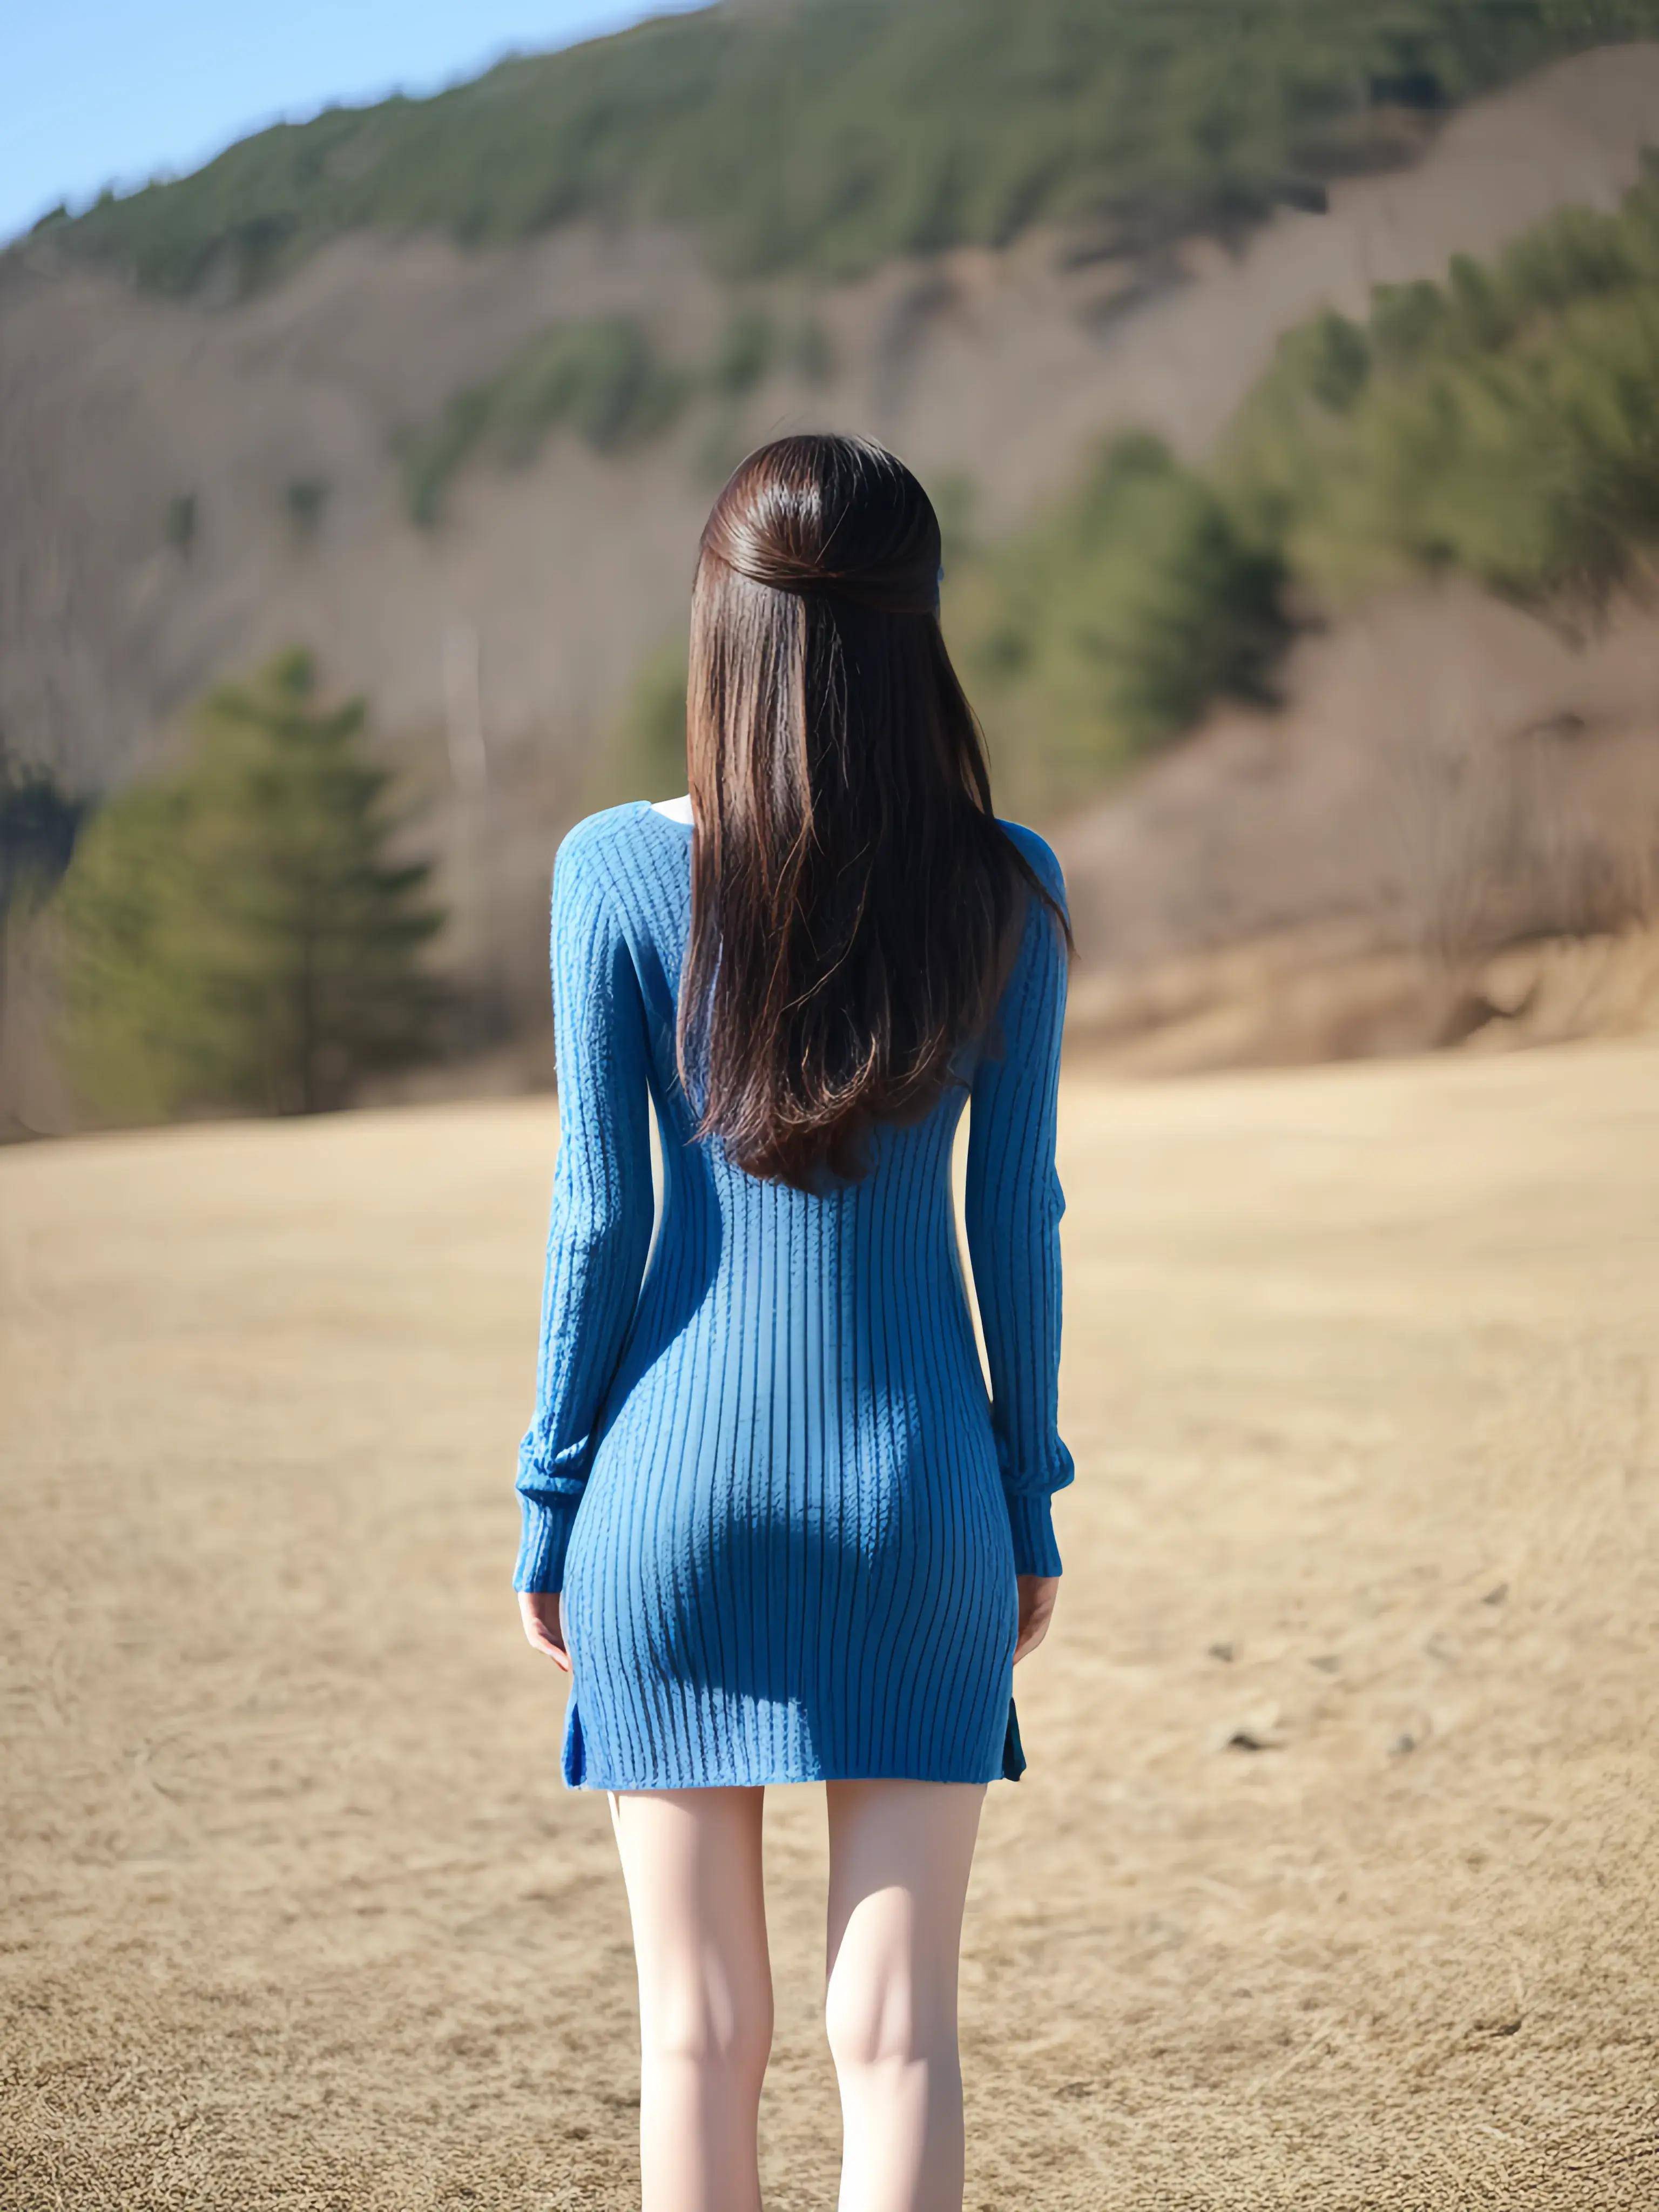 背影如画:蓝色针织裙下的女神风情